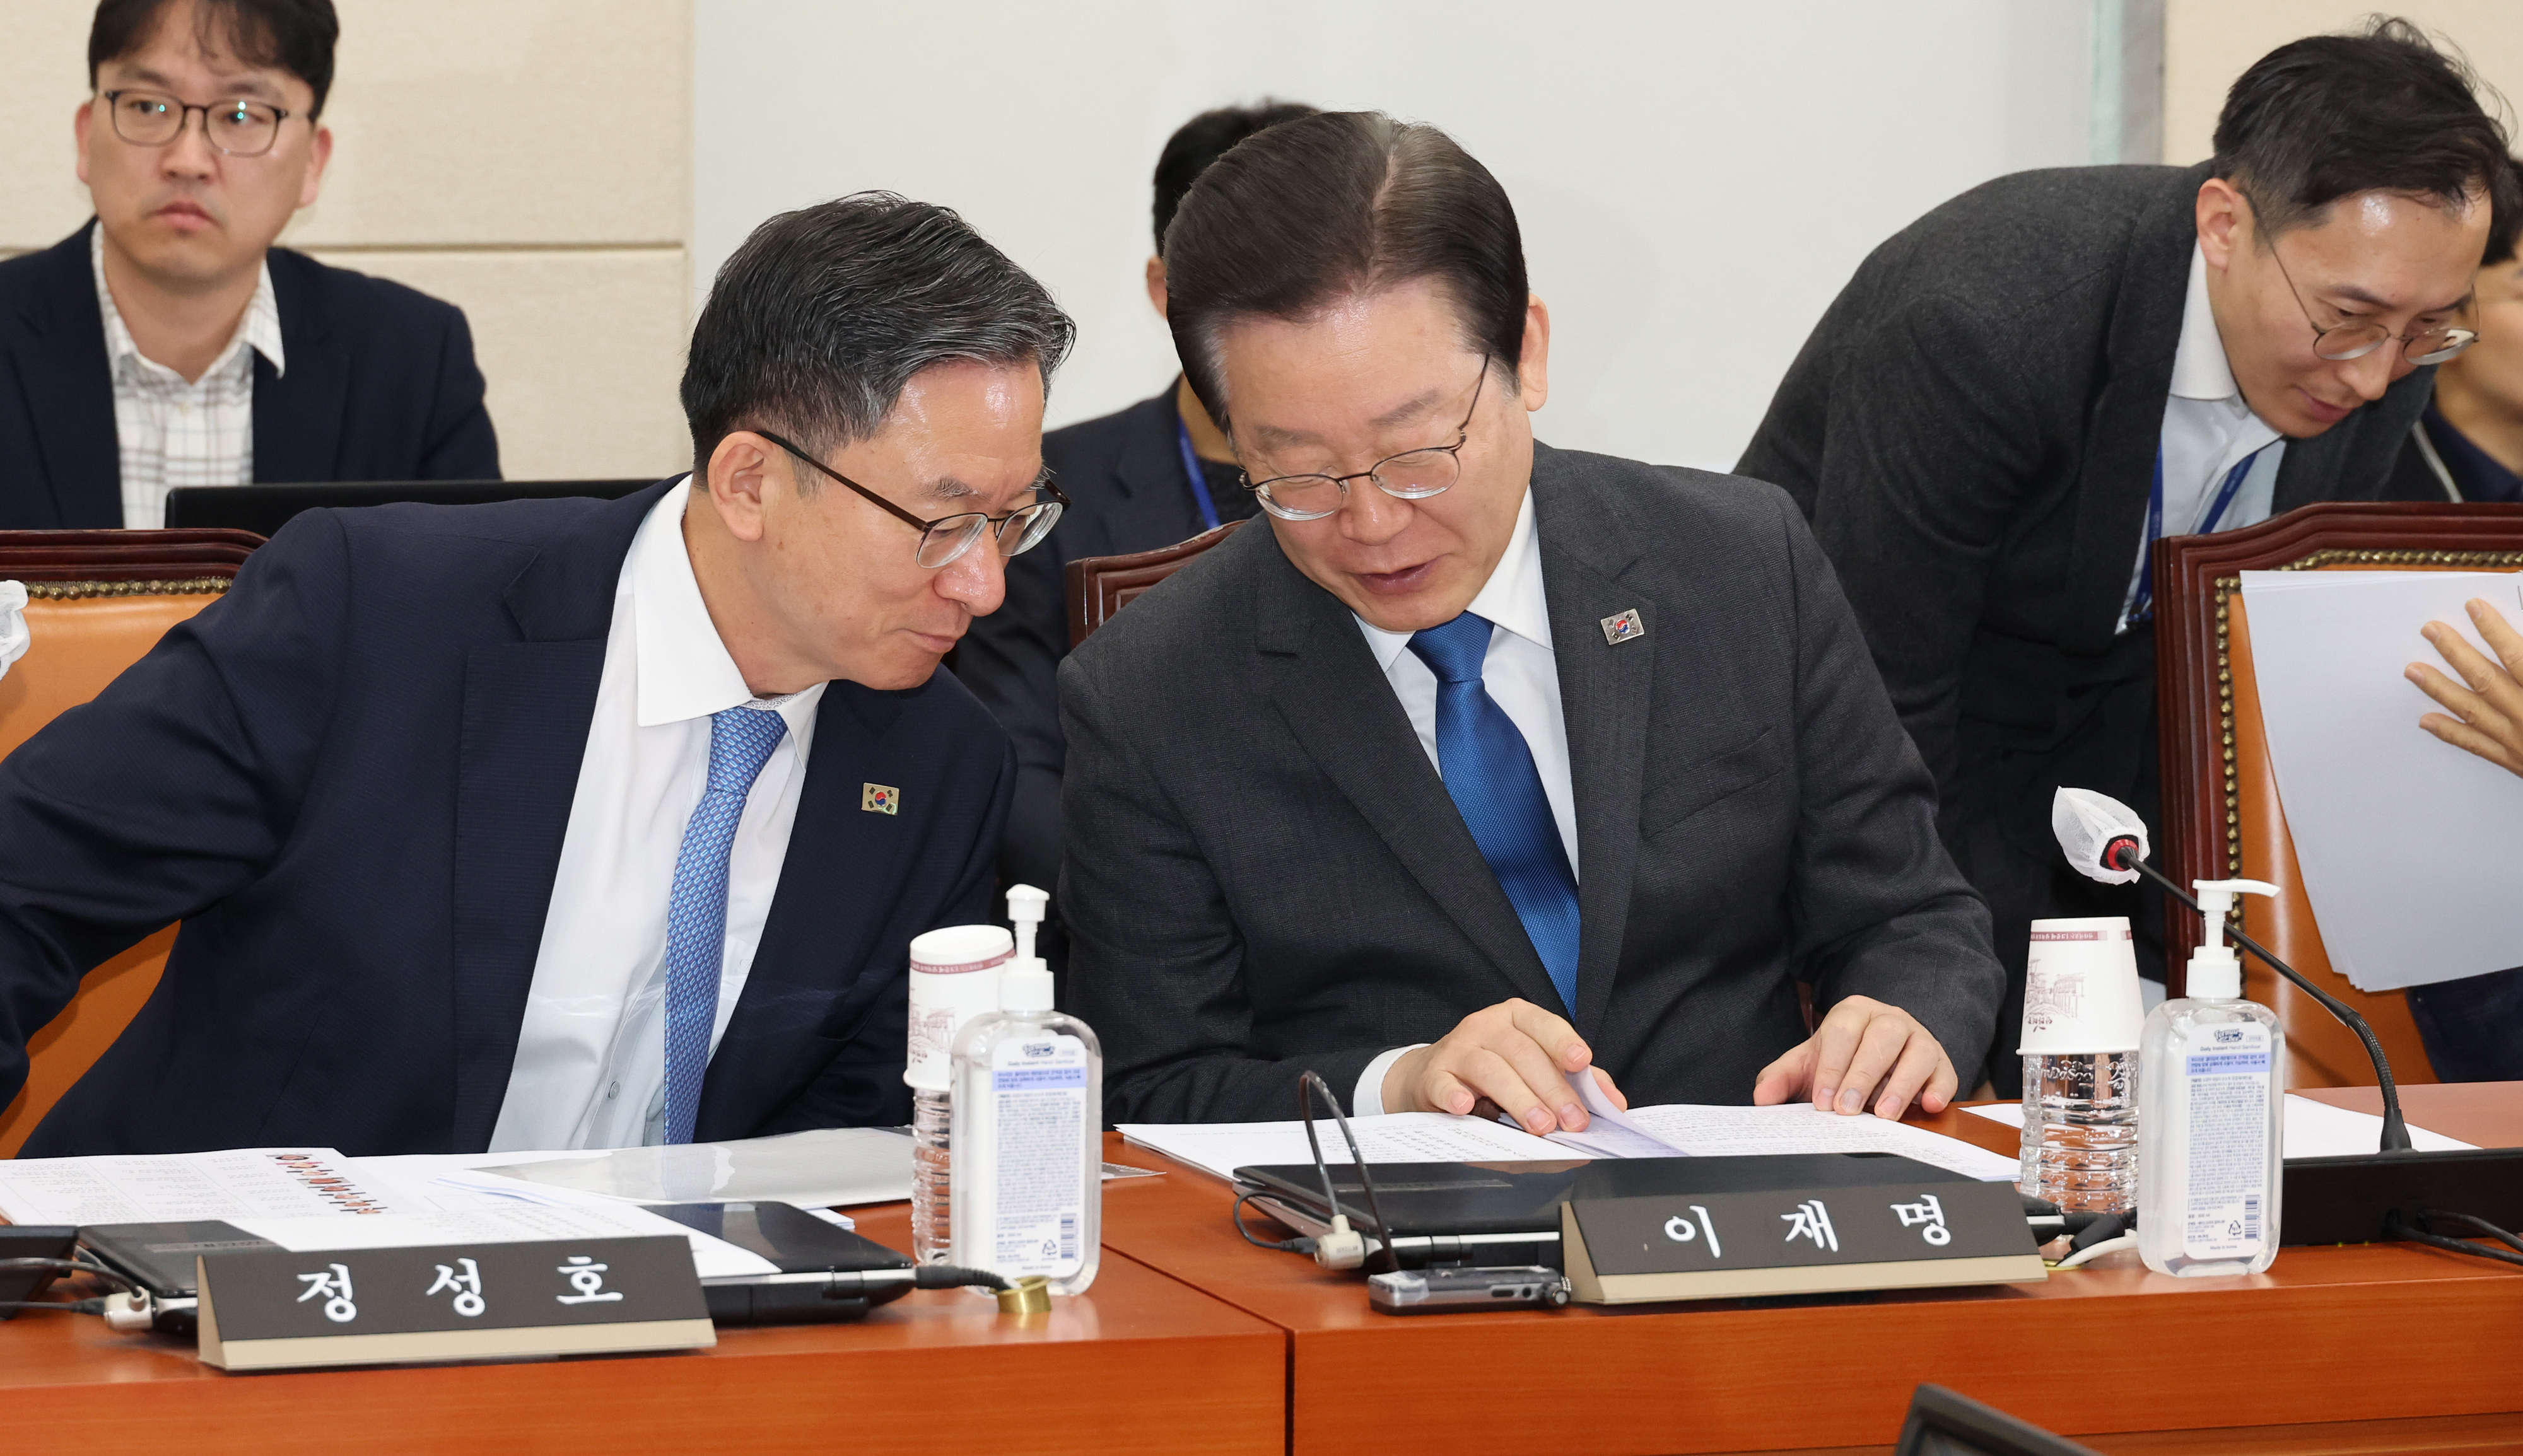 정성호(왼쪽) 더불어민주당 의원과 이재명 대표가 대화를 나누고 있다. 연합뉴스